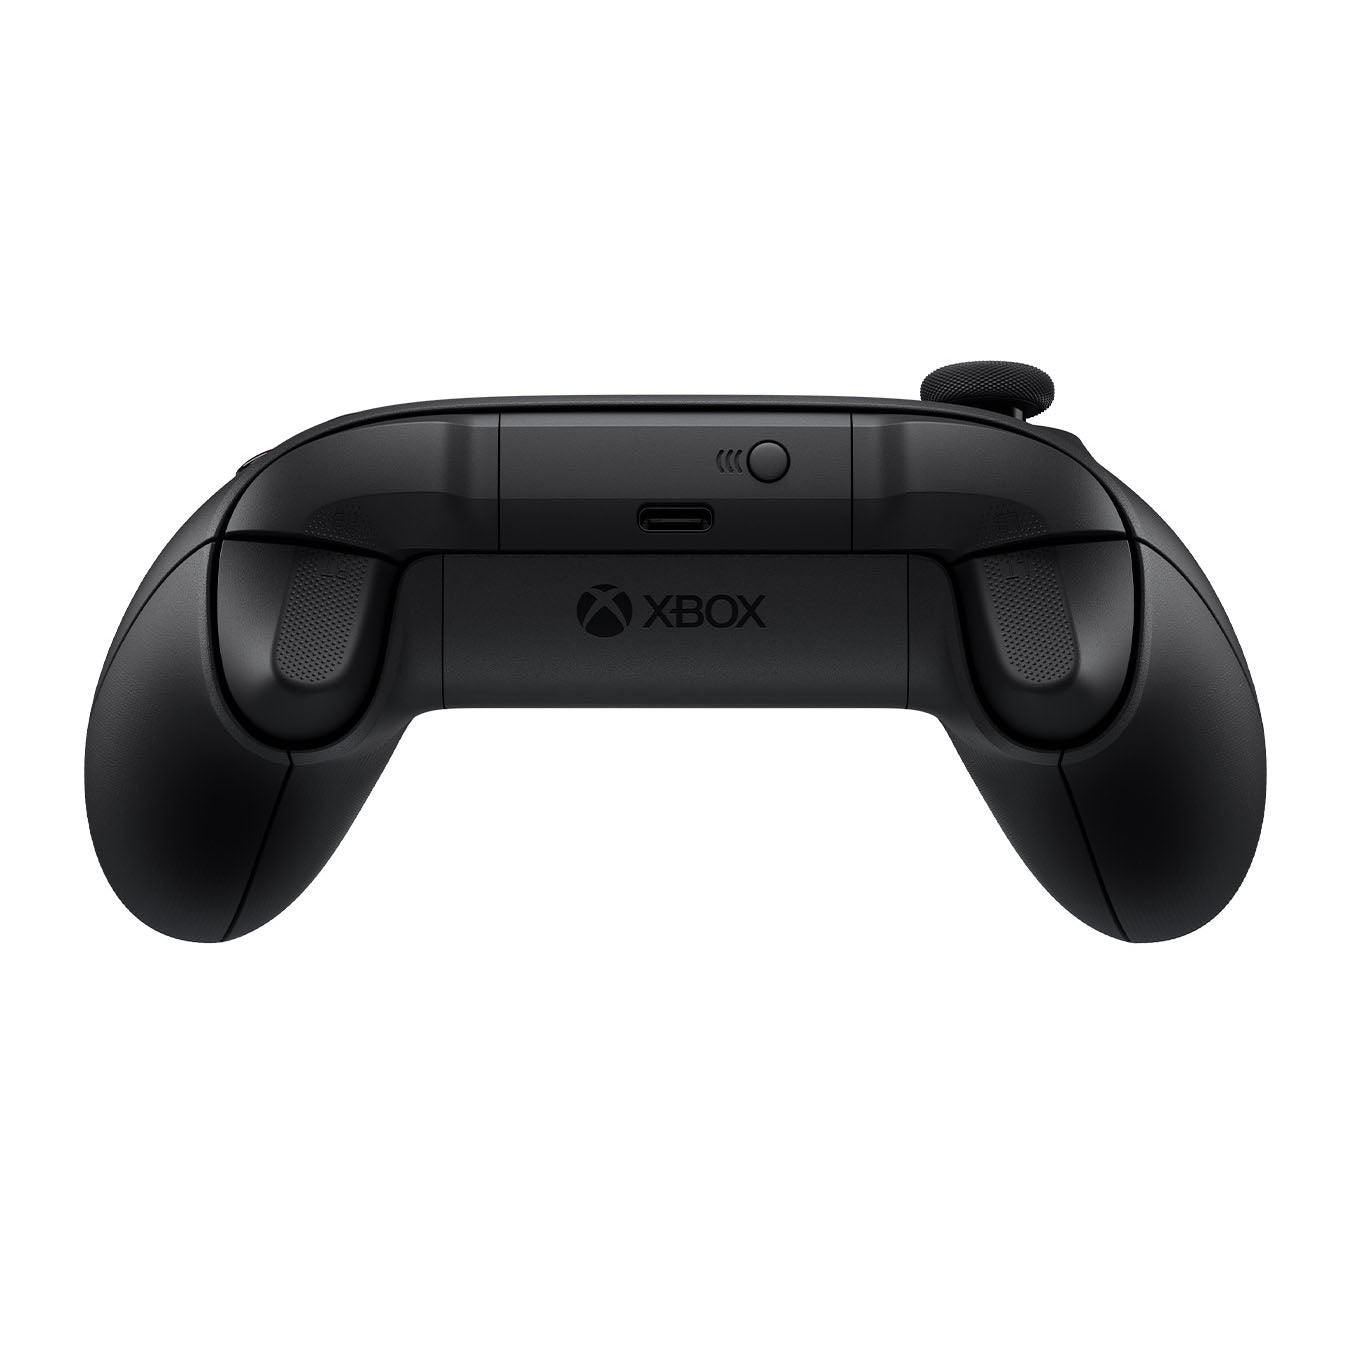 Microsoft - Manette Xbox sans fil - Carbon Black